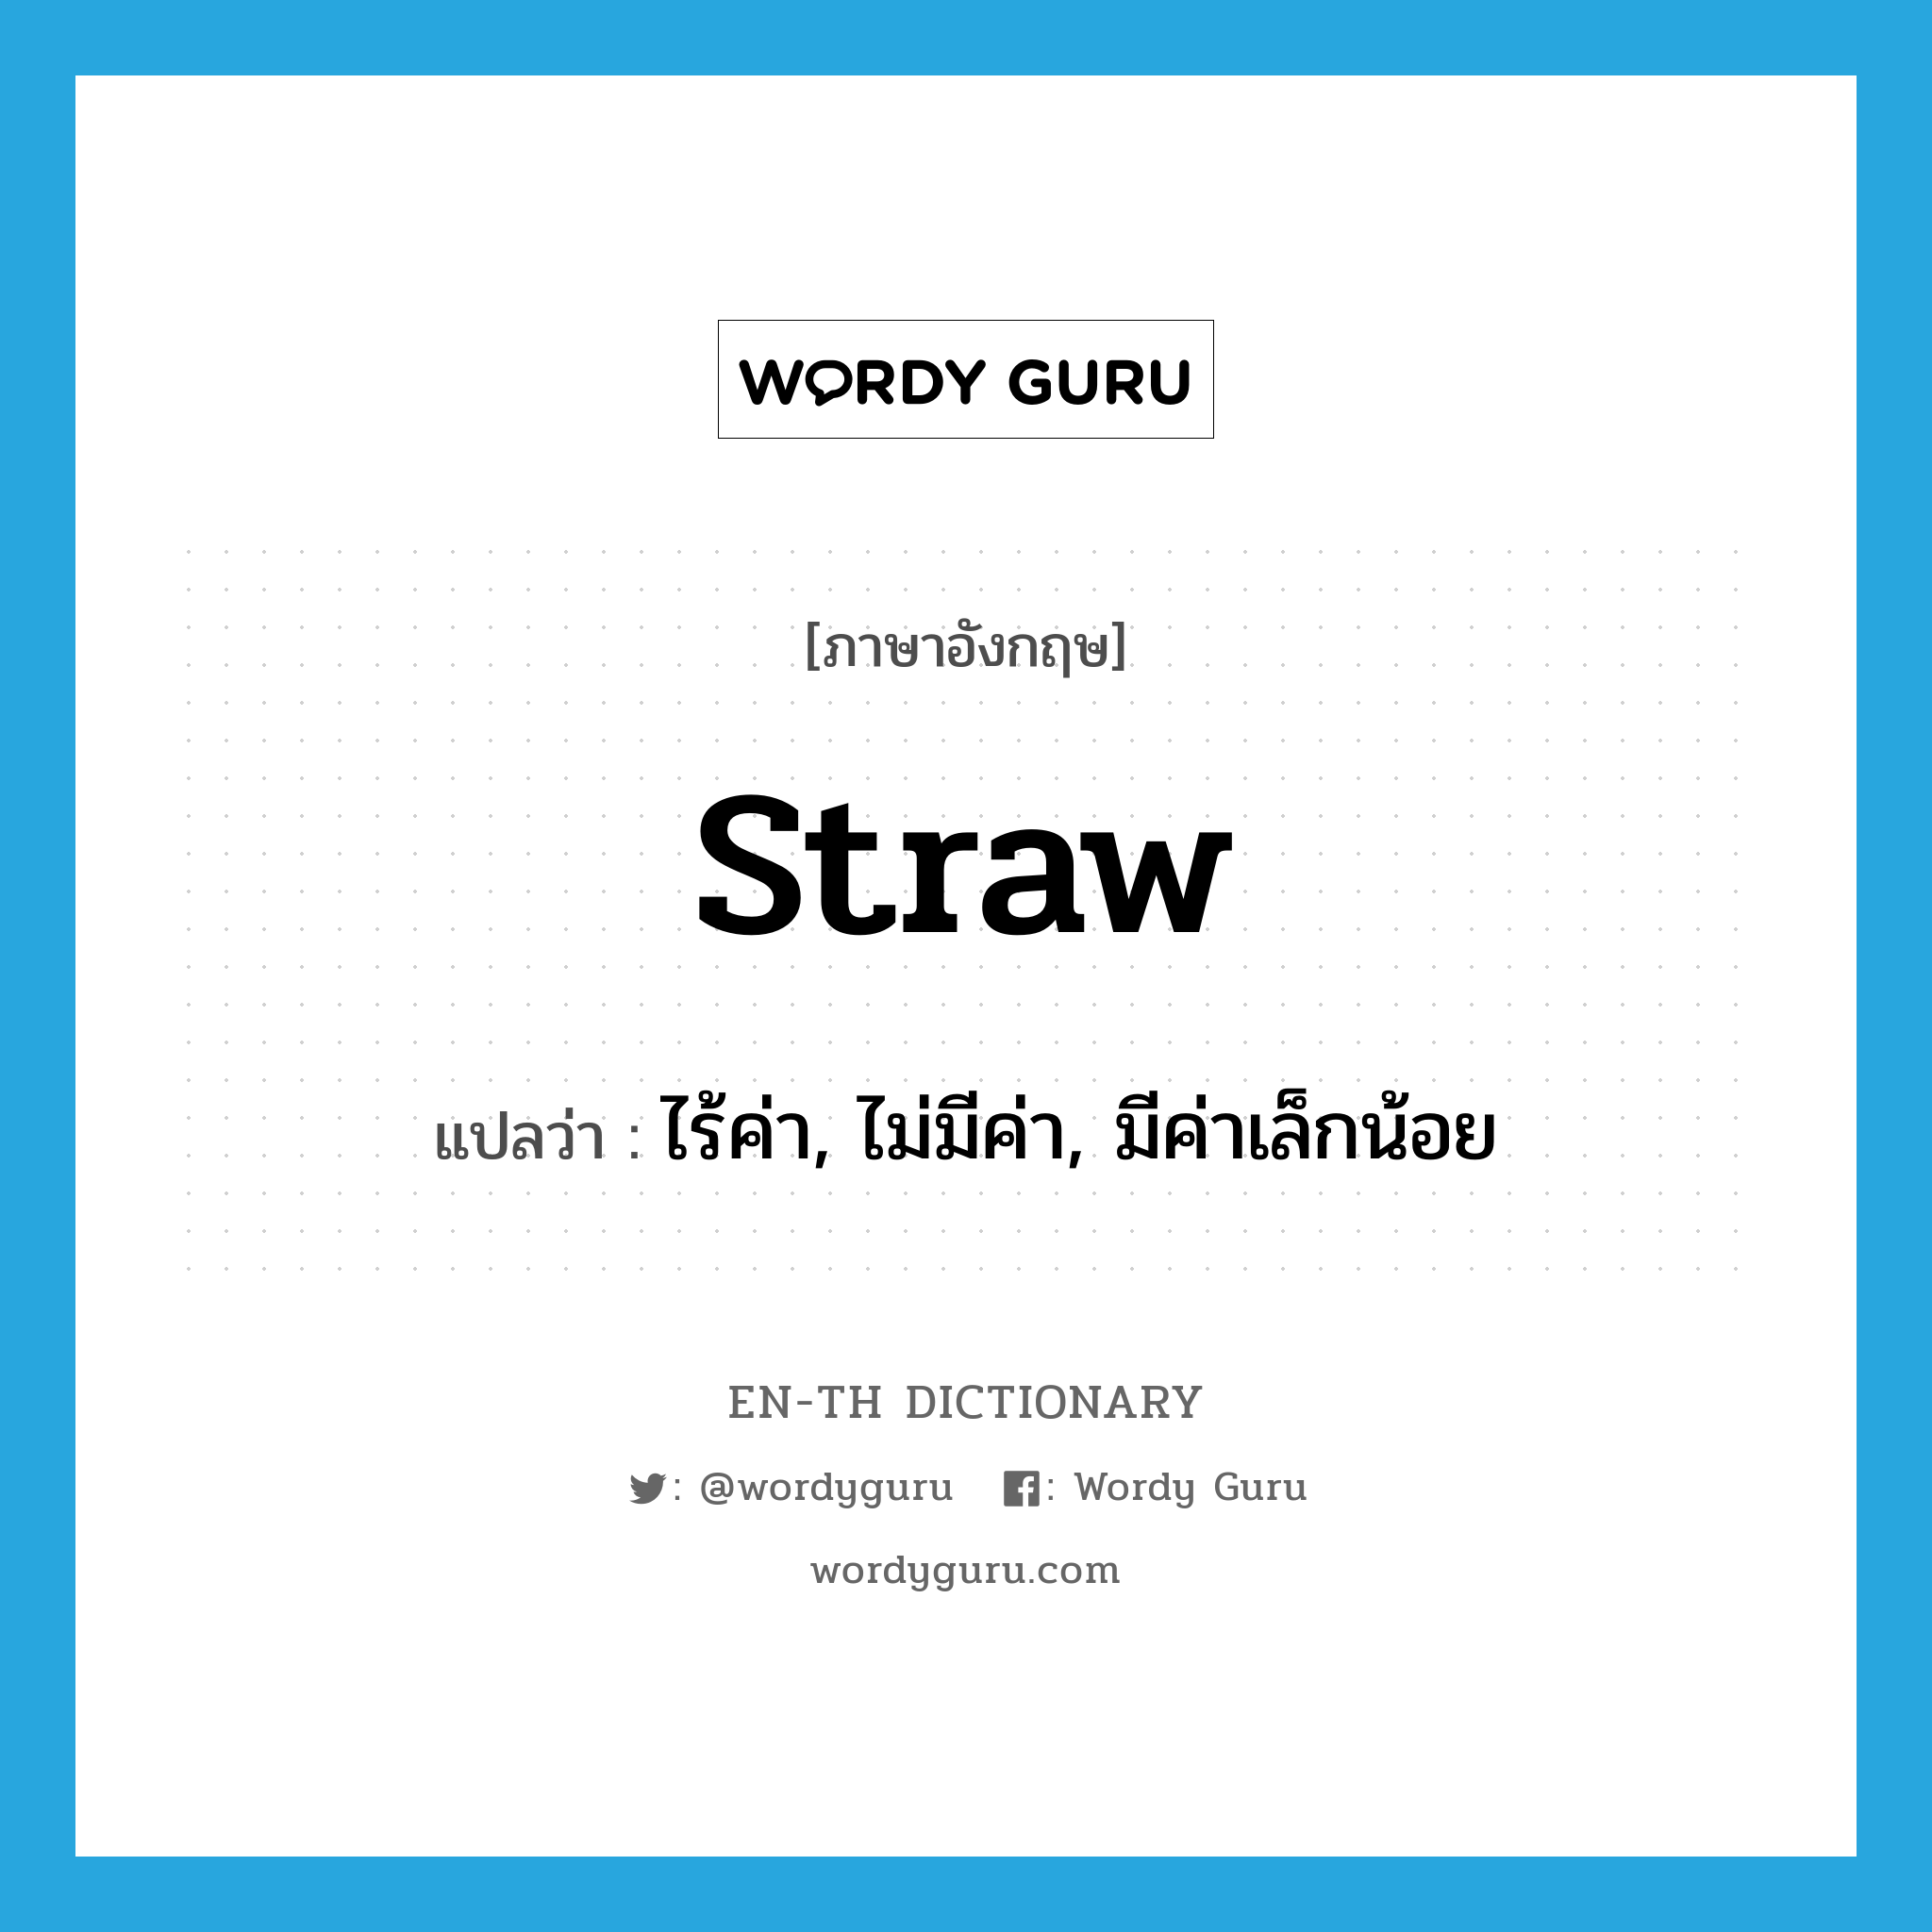 straw แปลว่า?, คำศัพท์ภาษาอังกฤษ straw แปลว่า ไร้ค่า, ไม่มีค่า, มีค่าเล็กน้อย ประเภท ADJ หมวด ADJ